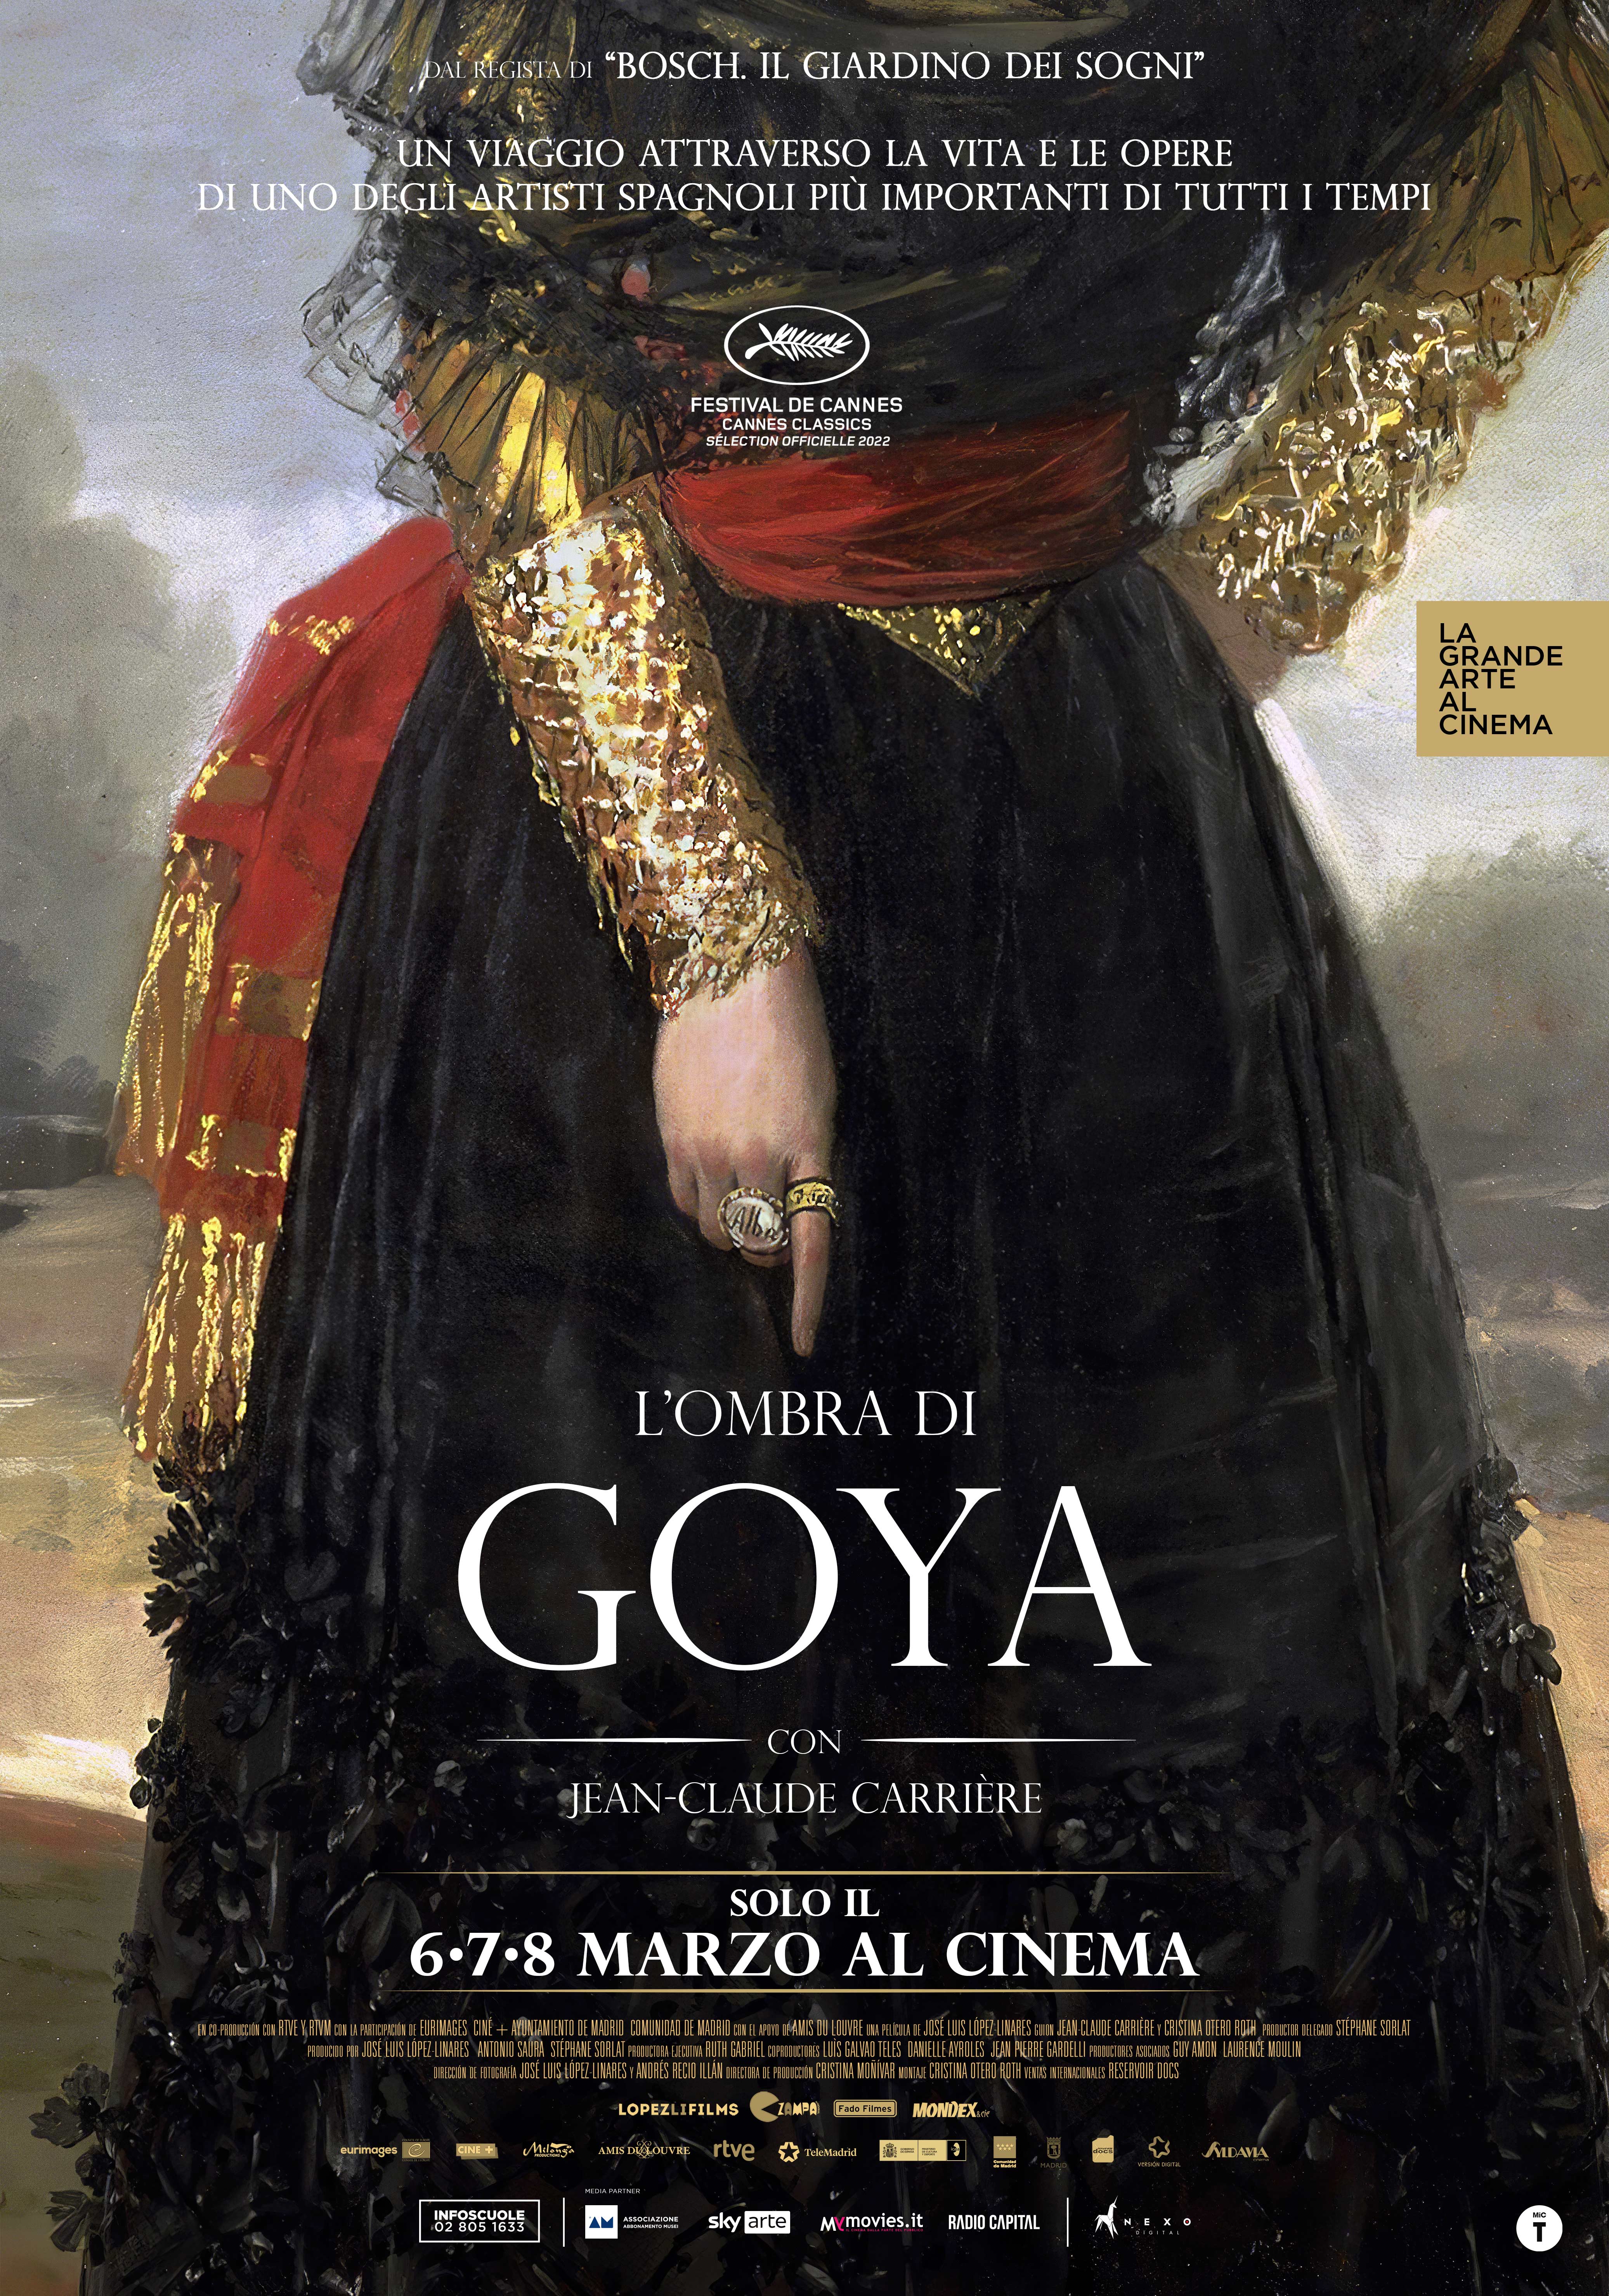 L’OMBRA DI GOYA - LA GRANDE ARTE AL CINEMA